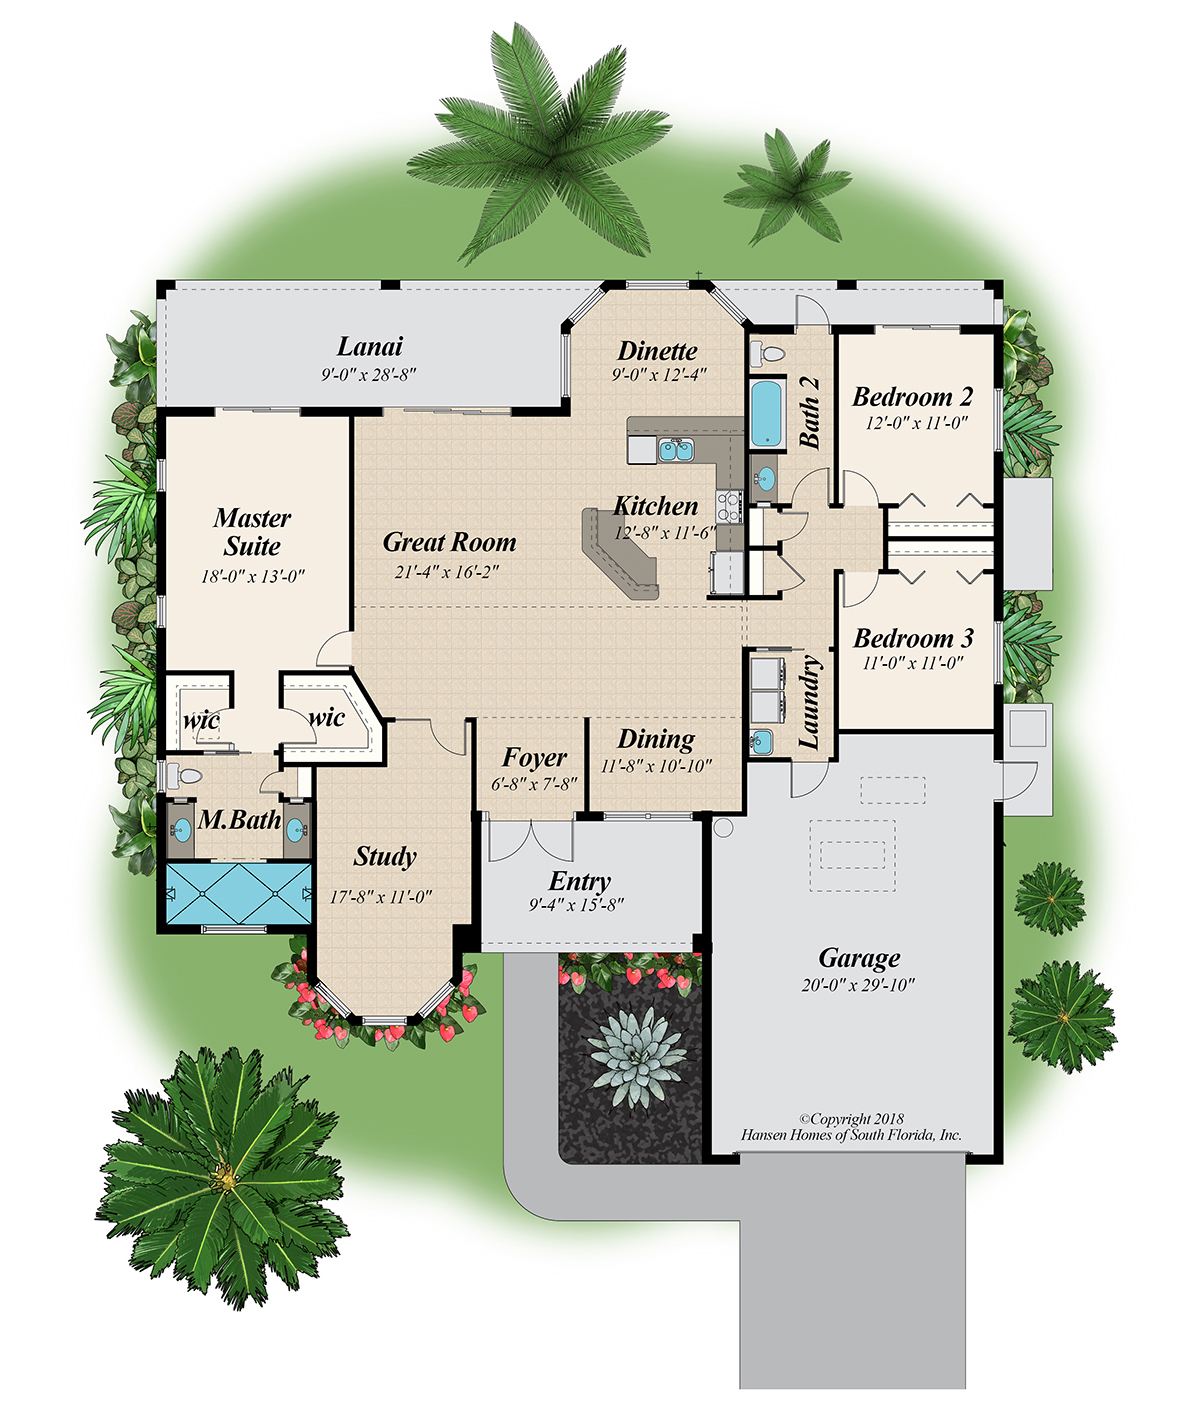 The Slater Home Plan Floor Plans